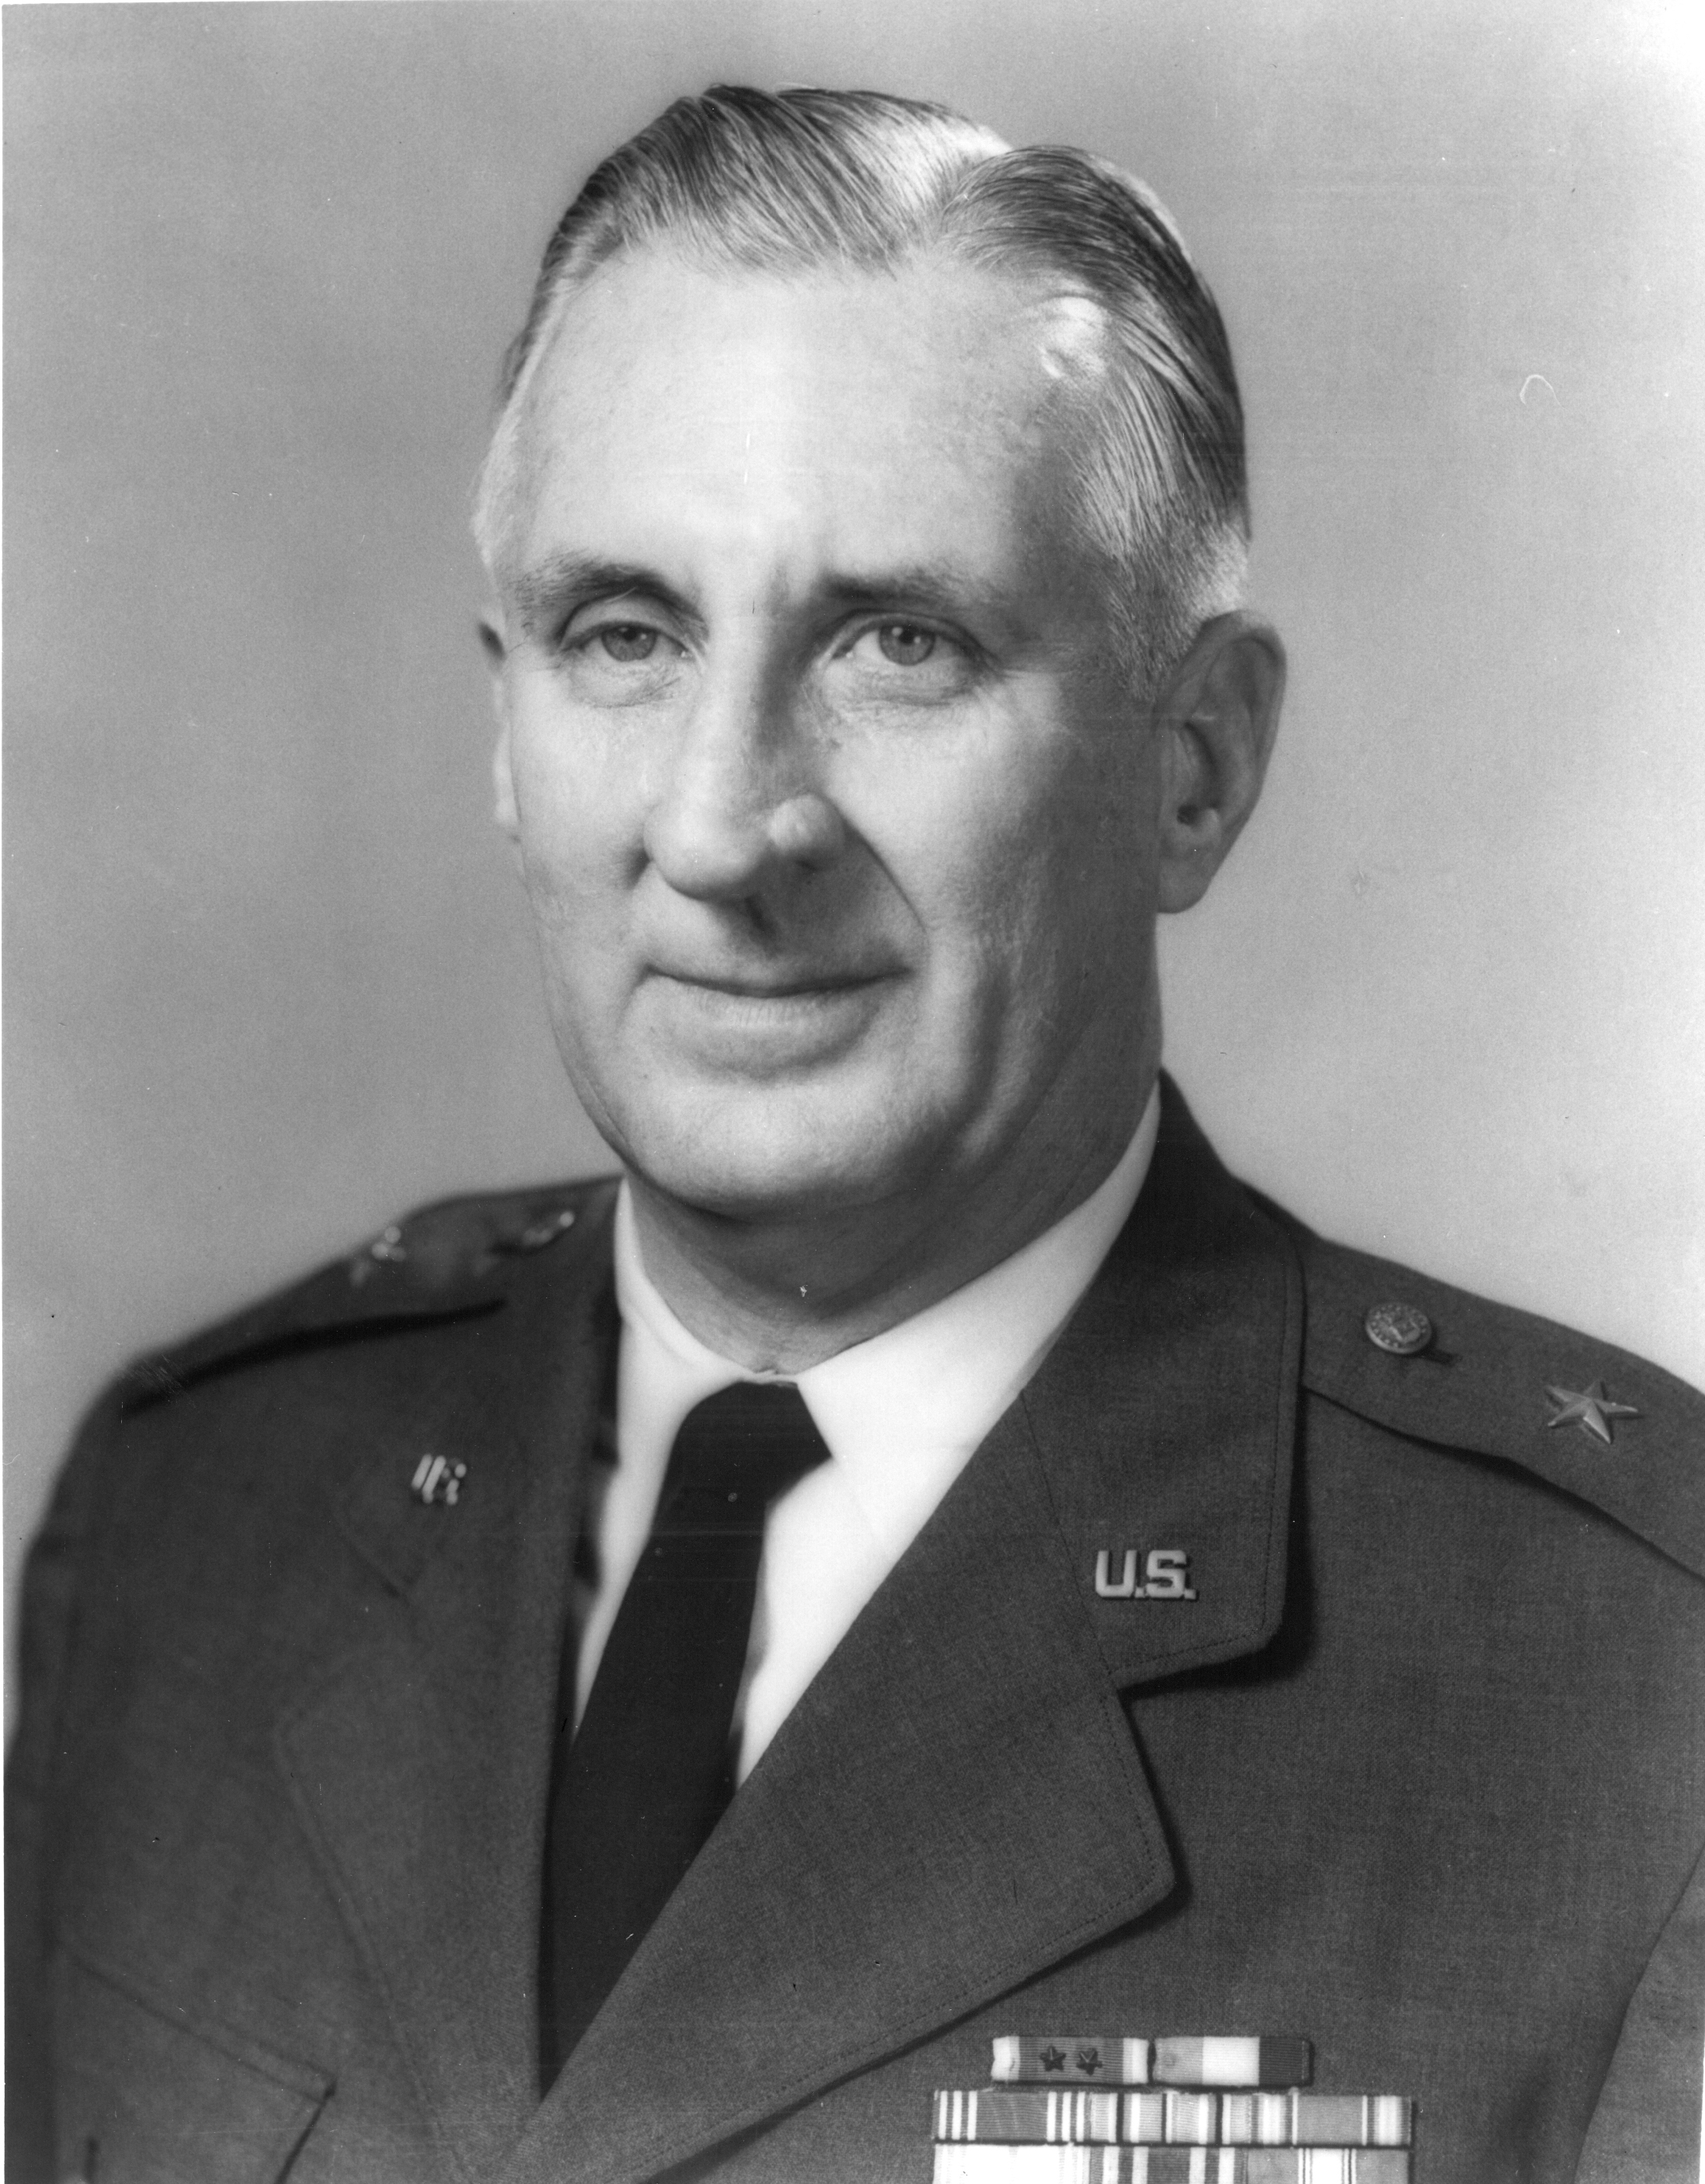 Major General Robert L. Pou Jr